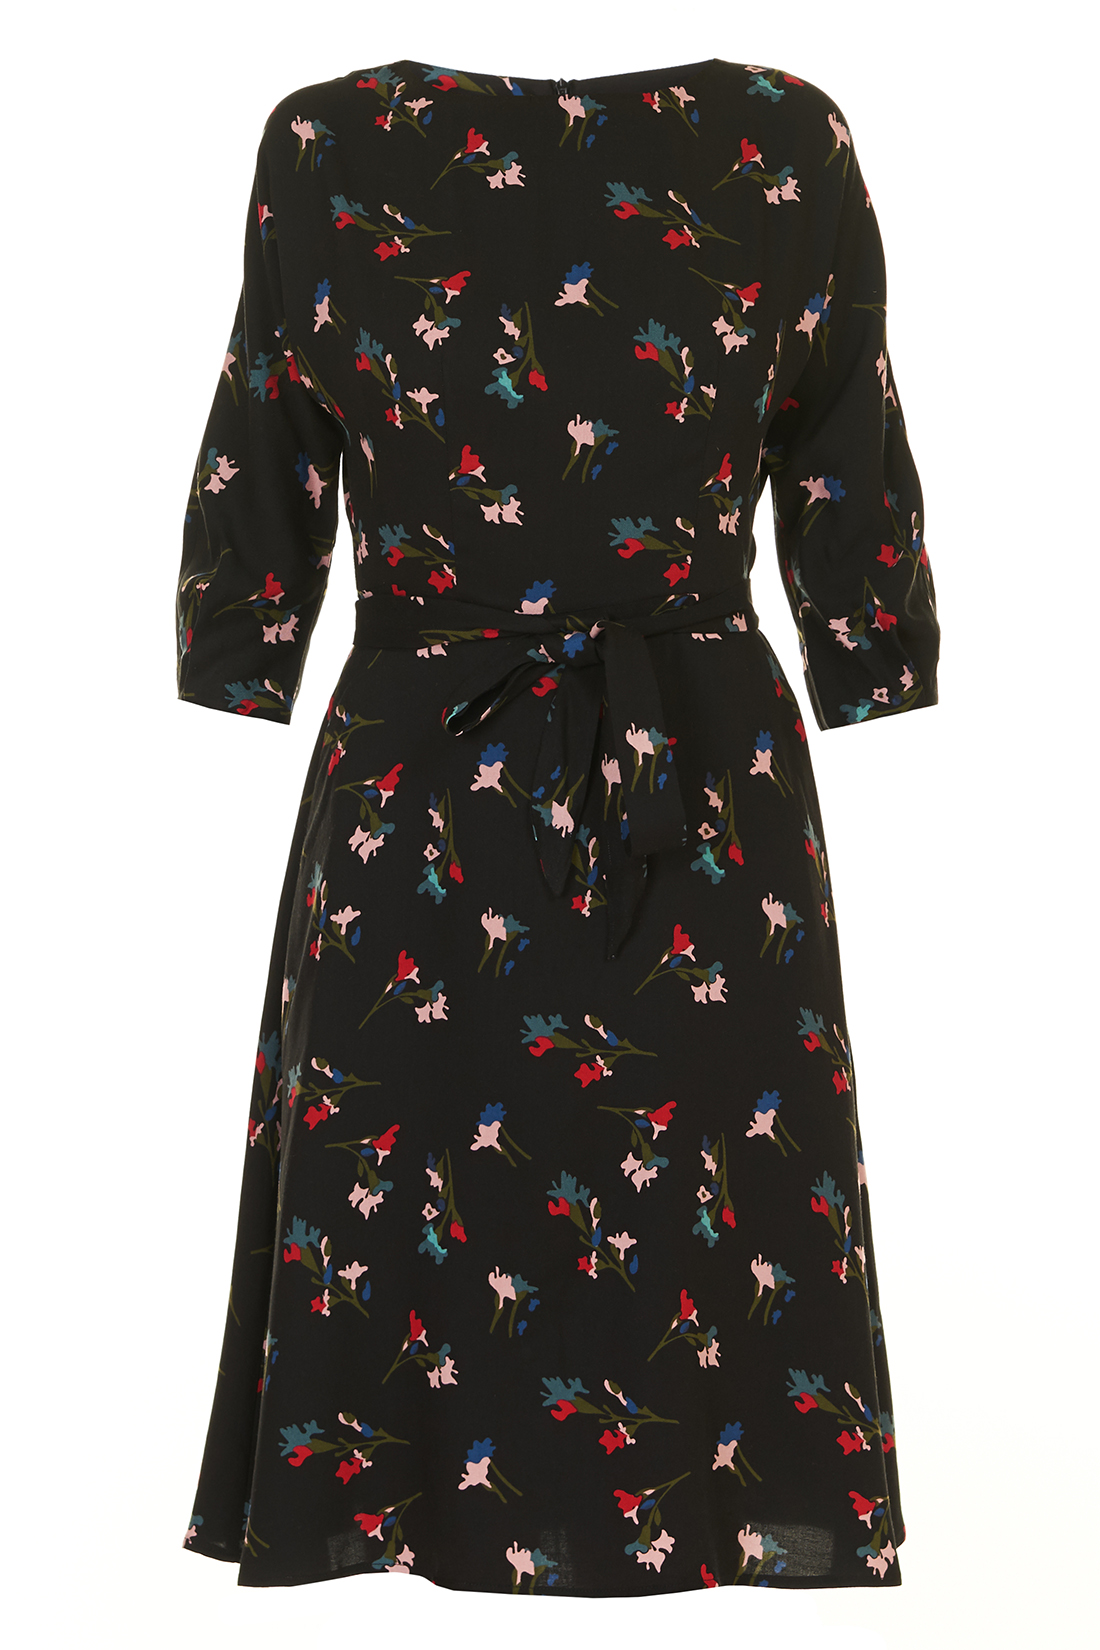 Платье с цельнокроенными рукавами и поясом (арт. baon B457504), размер XL, цвет черный Платье с цельнокроенными рукавами и поясом (арт. baon B457504) - фото 3